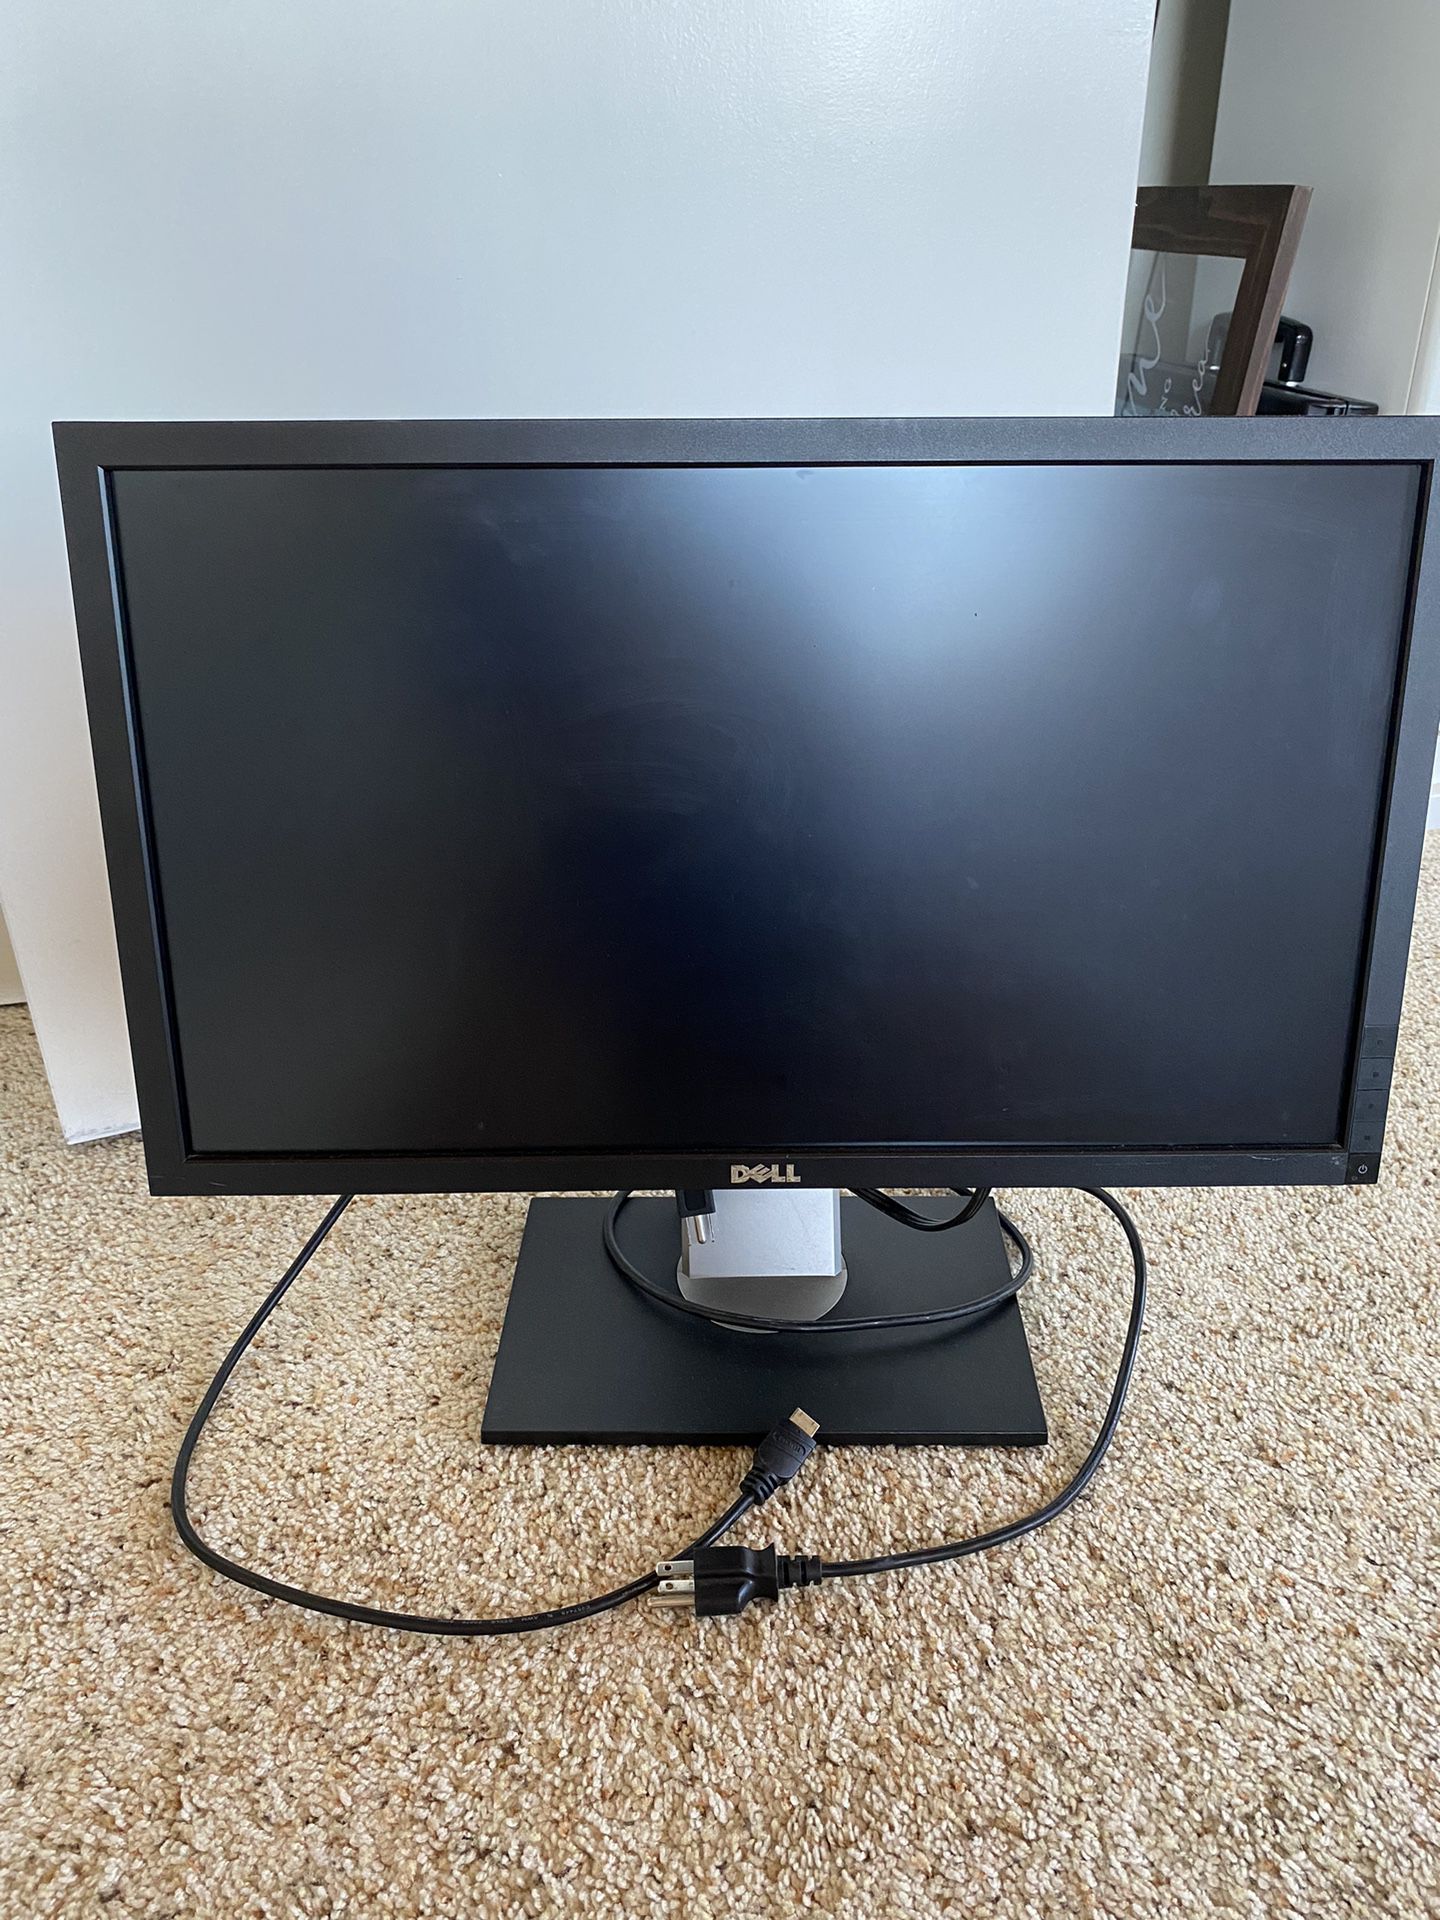 Dell 23” Computer Monitor